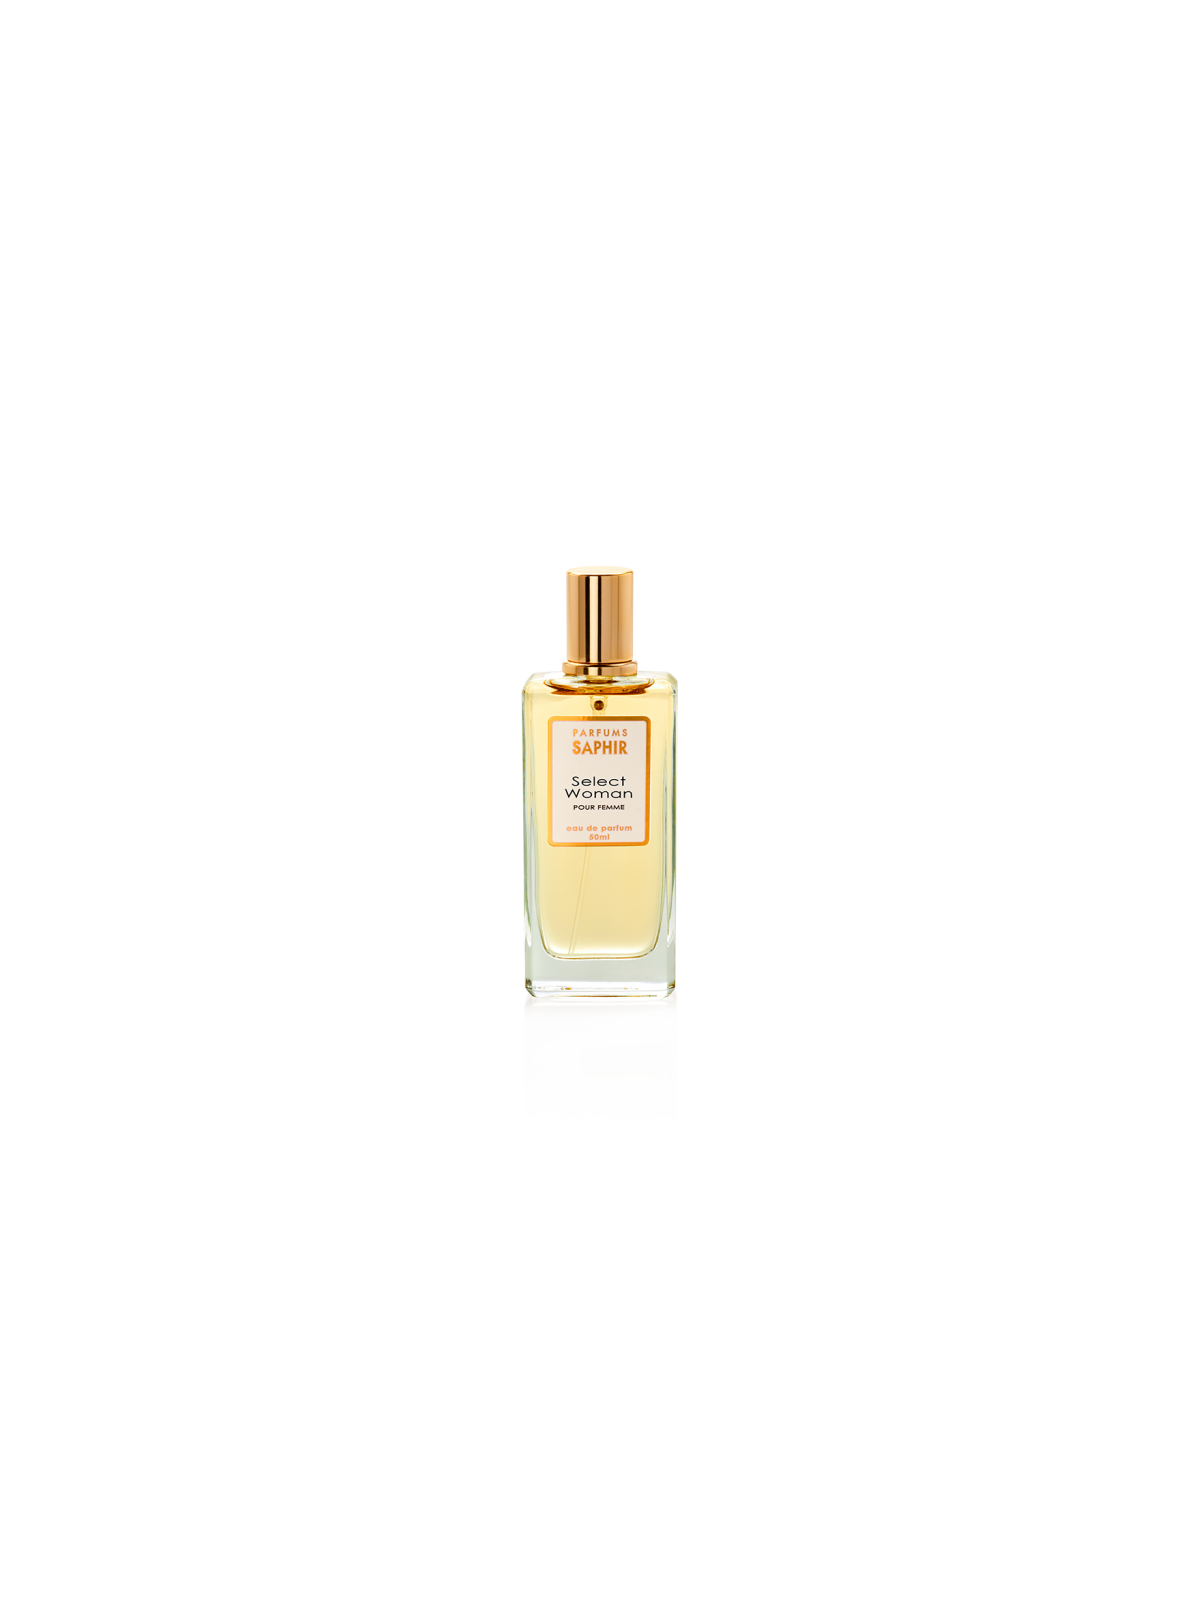 Comprar Perfume SAPHIR Select Woman 50ml. en Perfumes para mujer por sólo 4,95 € o un precio específico de 4,95 € en Thalie Care